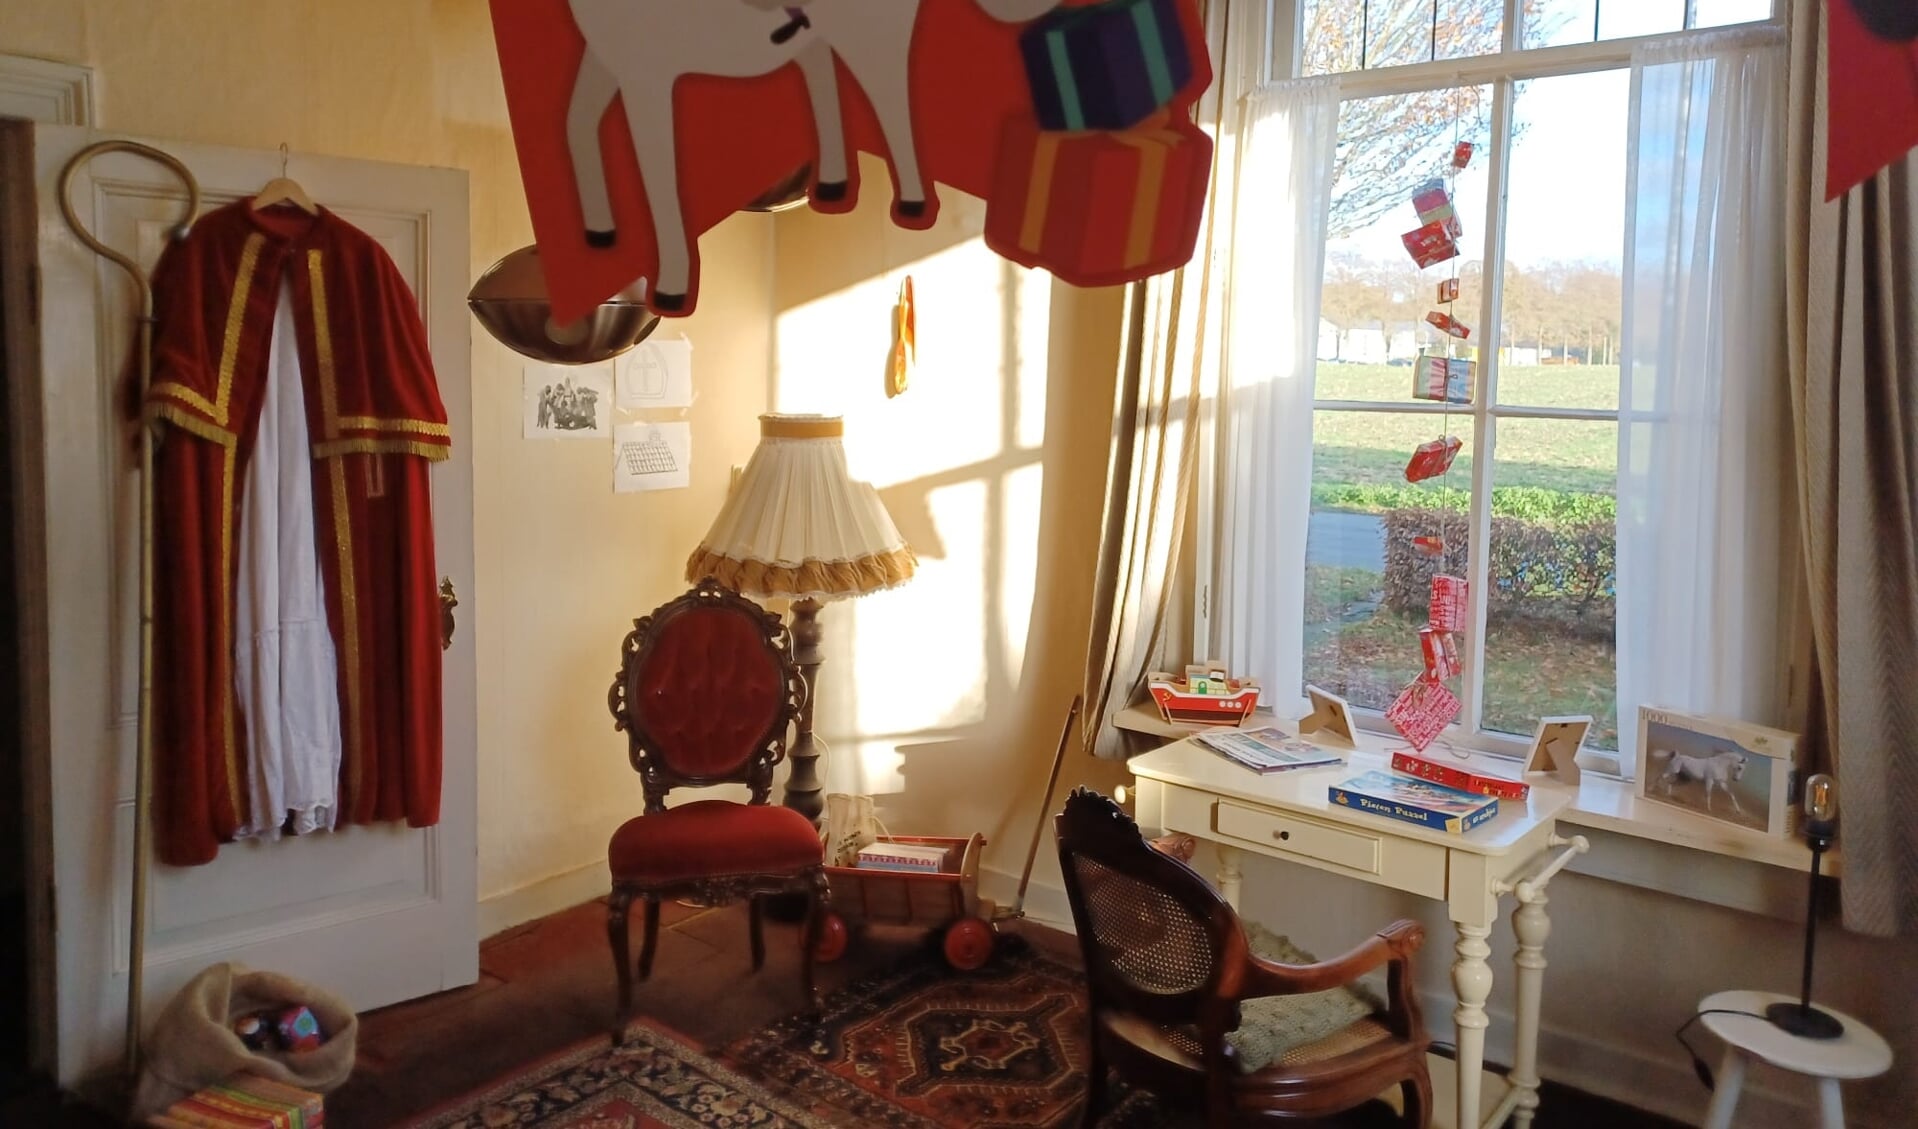 Dit lijkt toch echt de logeerkamer van Sinterklaas te zijn. Foto: PR